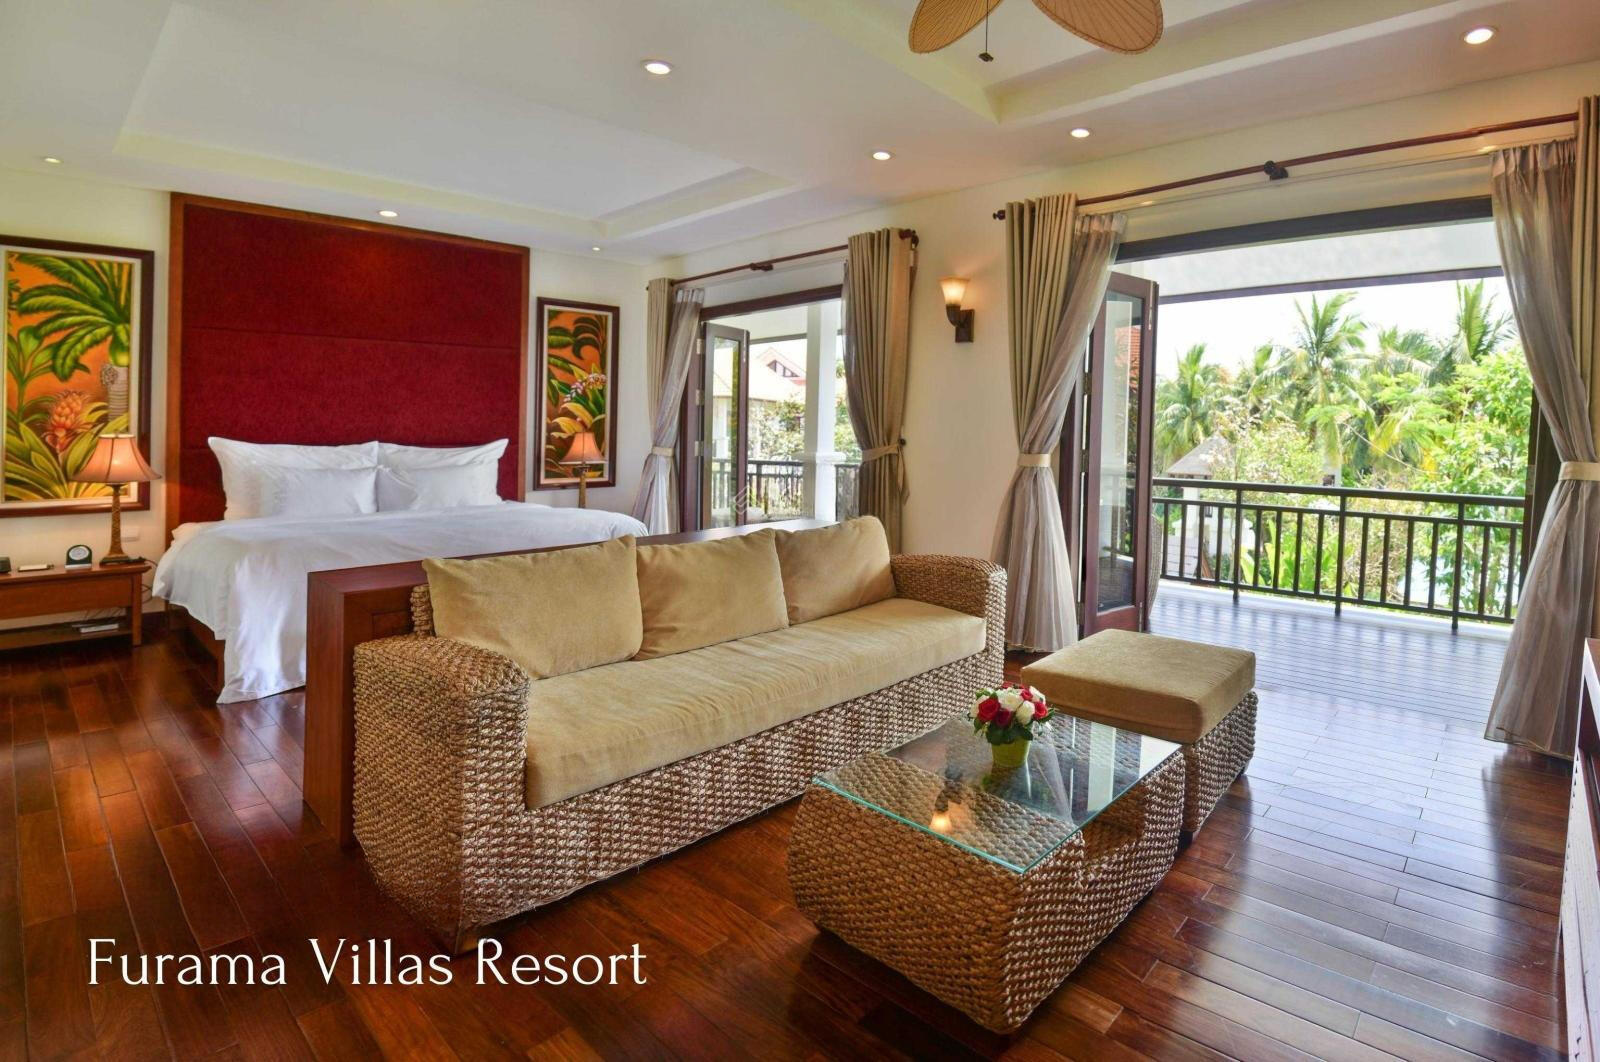 Furama villa for sale, 3 bedrooms, sea view.